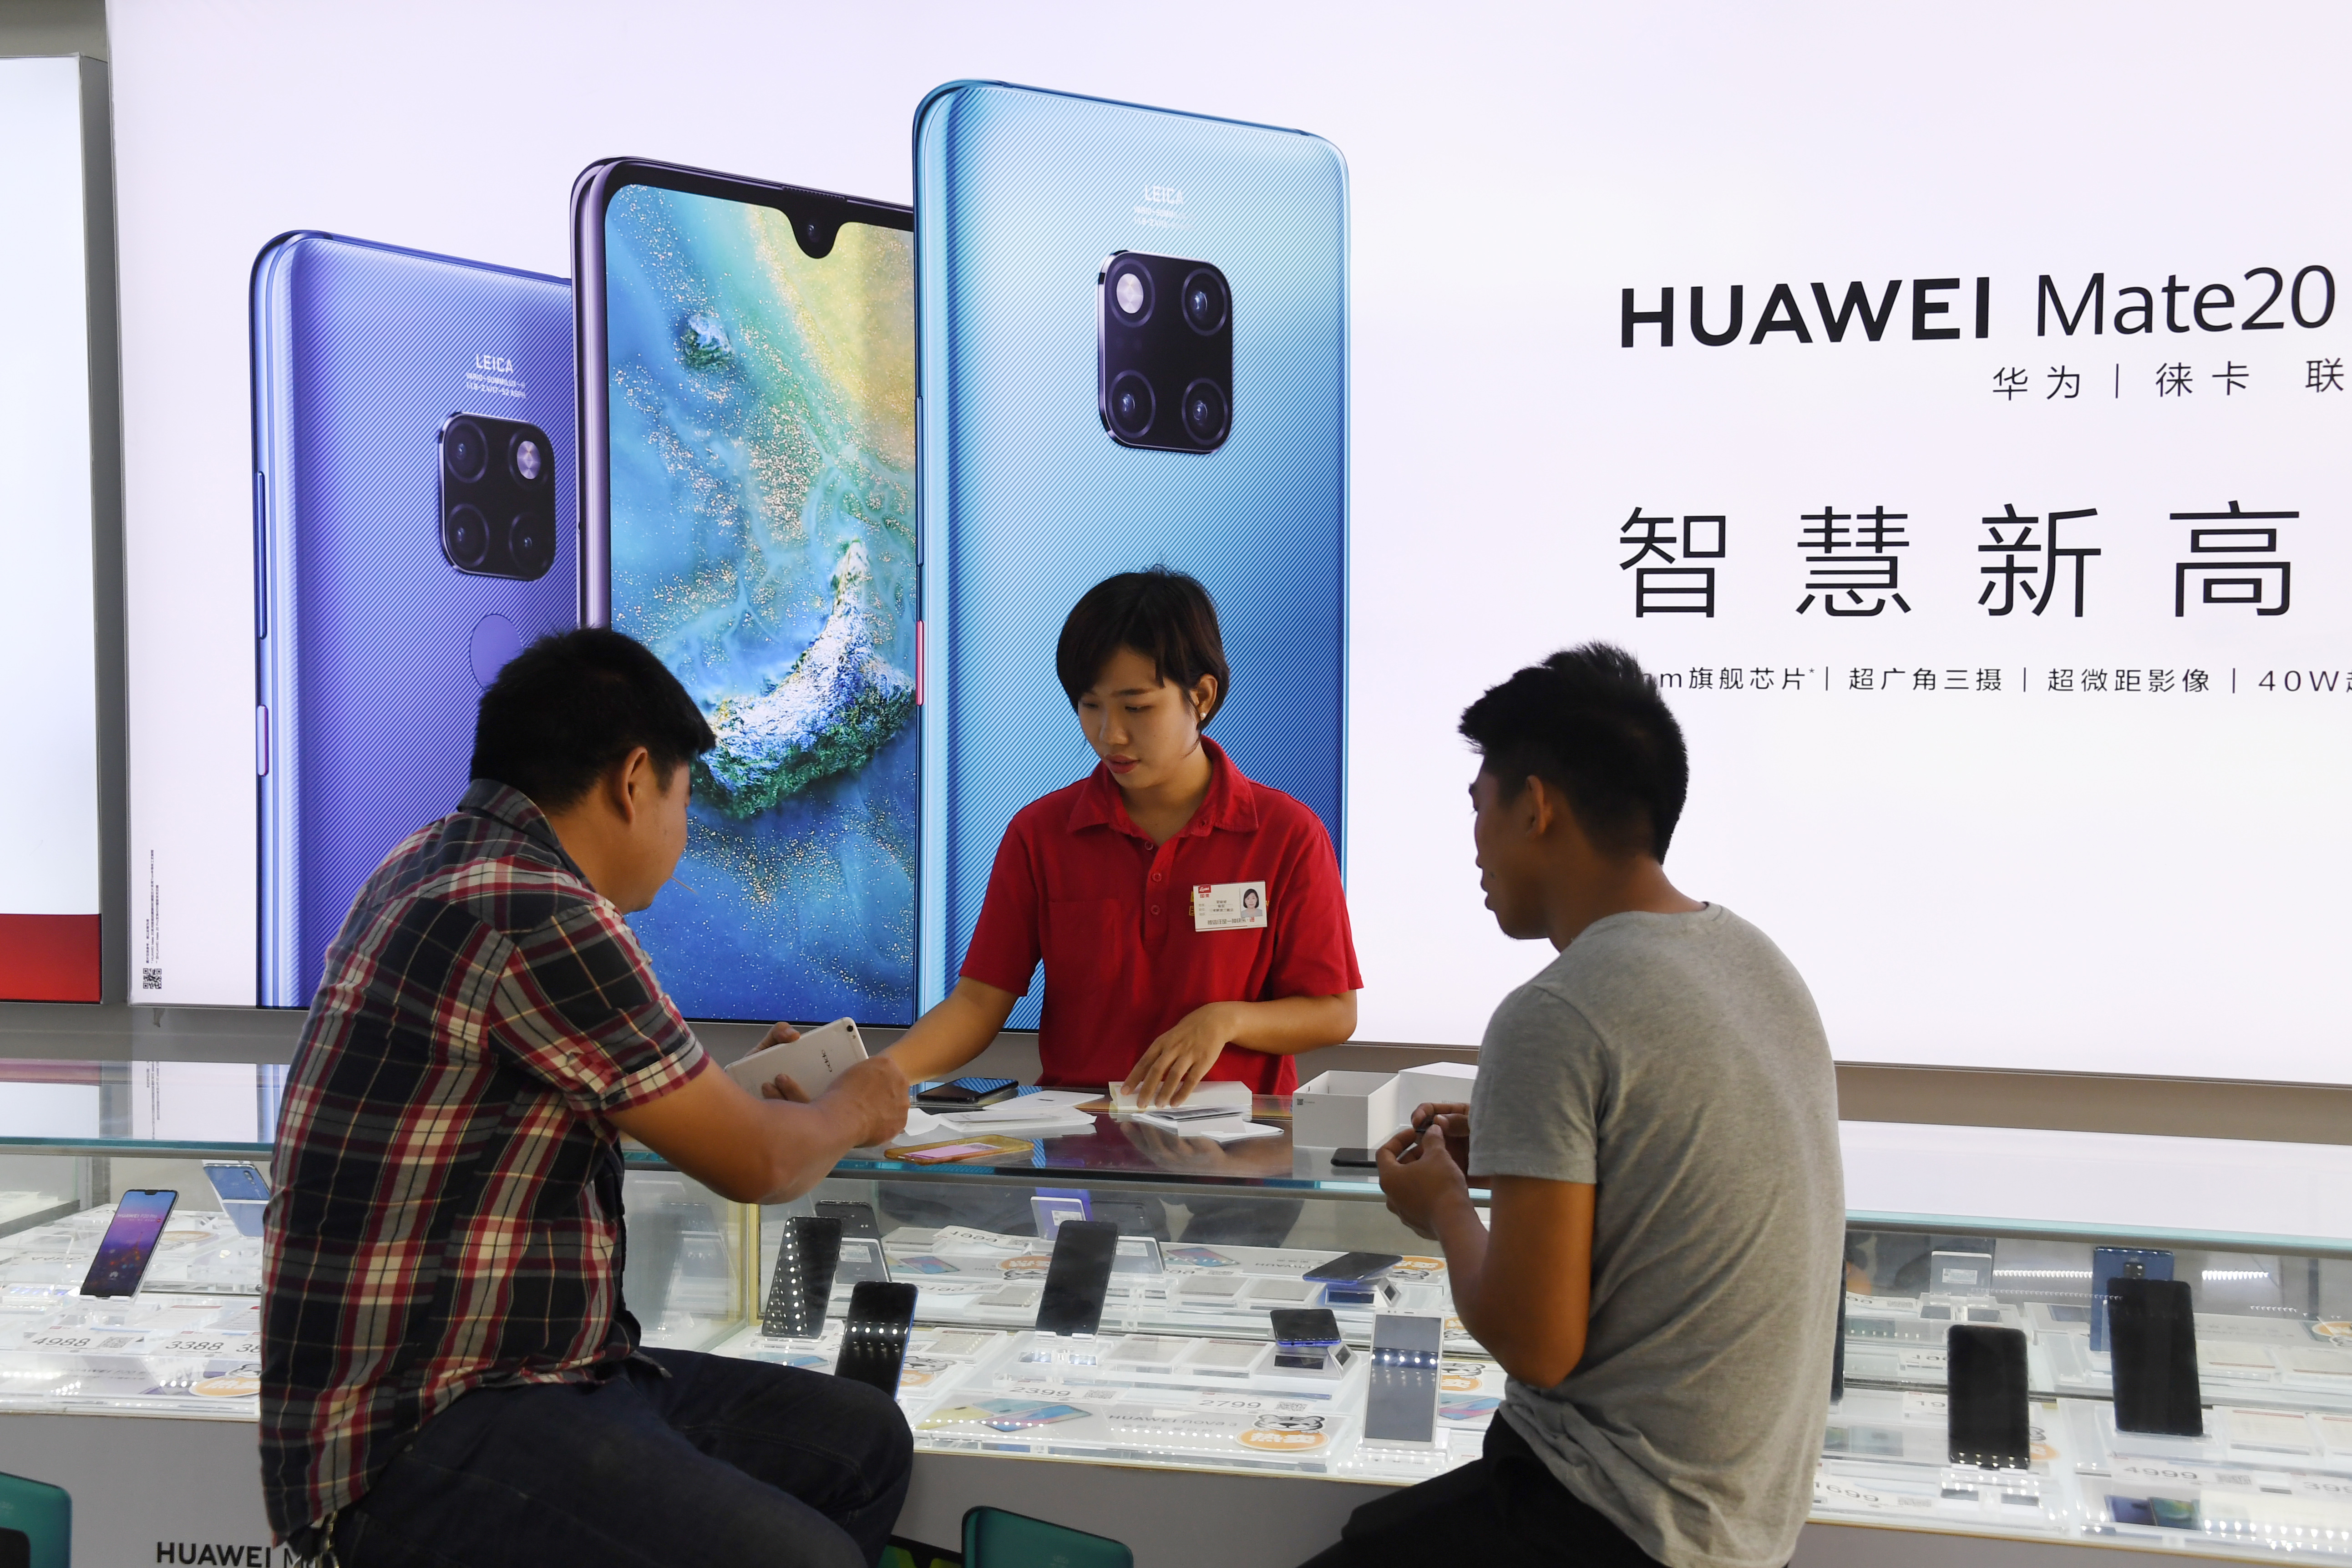 China sube el tono por caso Huawei pero EEUU se mantiene firme sobre comercio